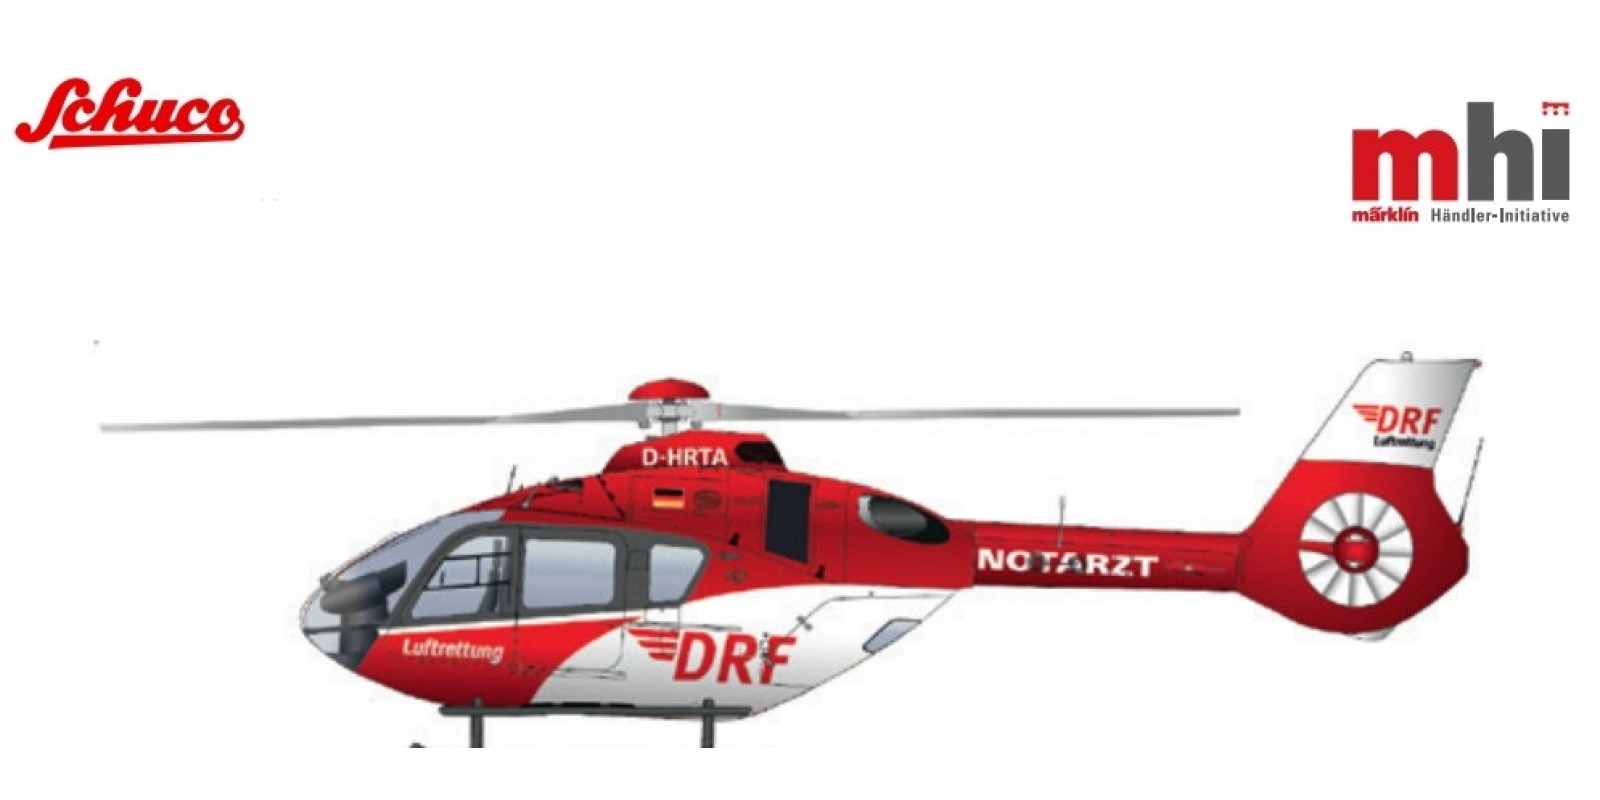 SC452674100 Airbus H135 "DRF Notarzt"